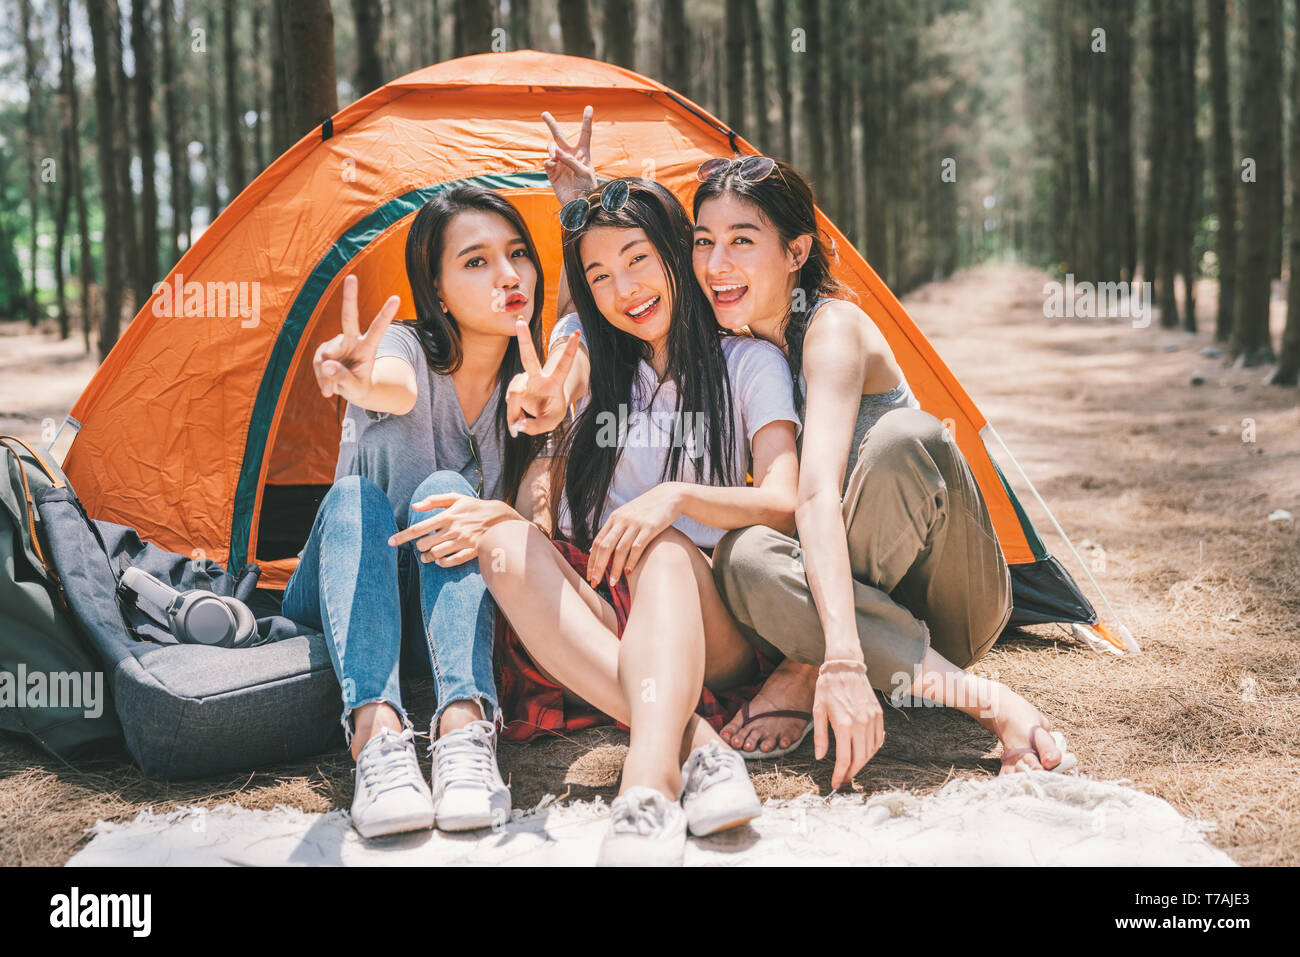 Gruppe der glücklichen asiatischen Mädchen im Teenageralter dabei Sieg zusammen stellen, Camping, das sich vom Zelt. Aktivität im Freien, Abenteuer Reisen oder Urlaub Konzept Stockfoto